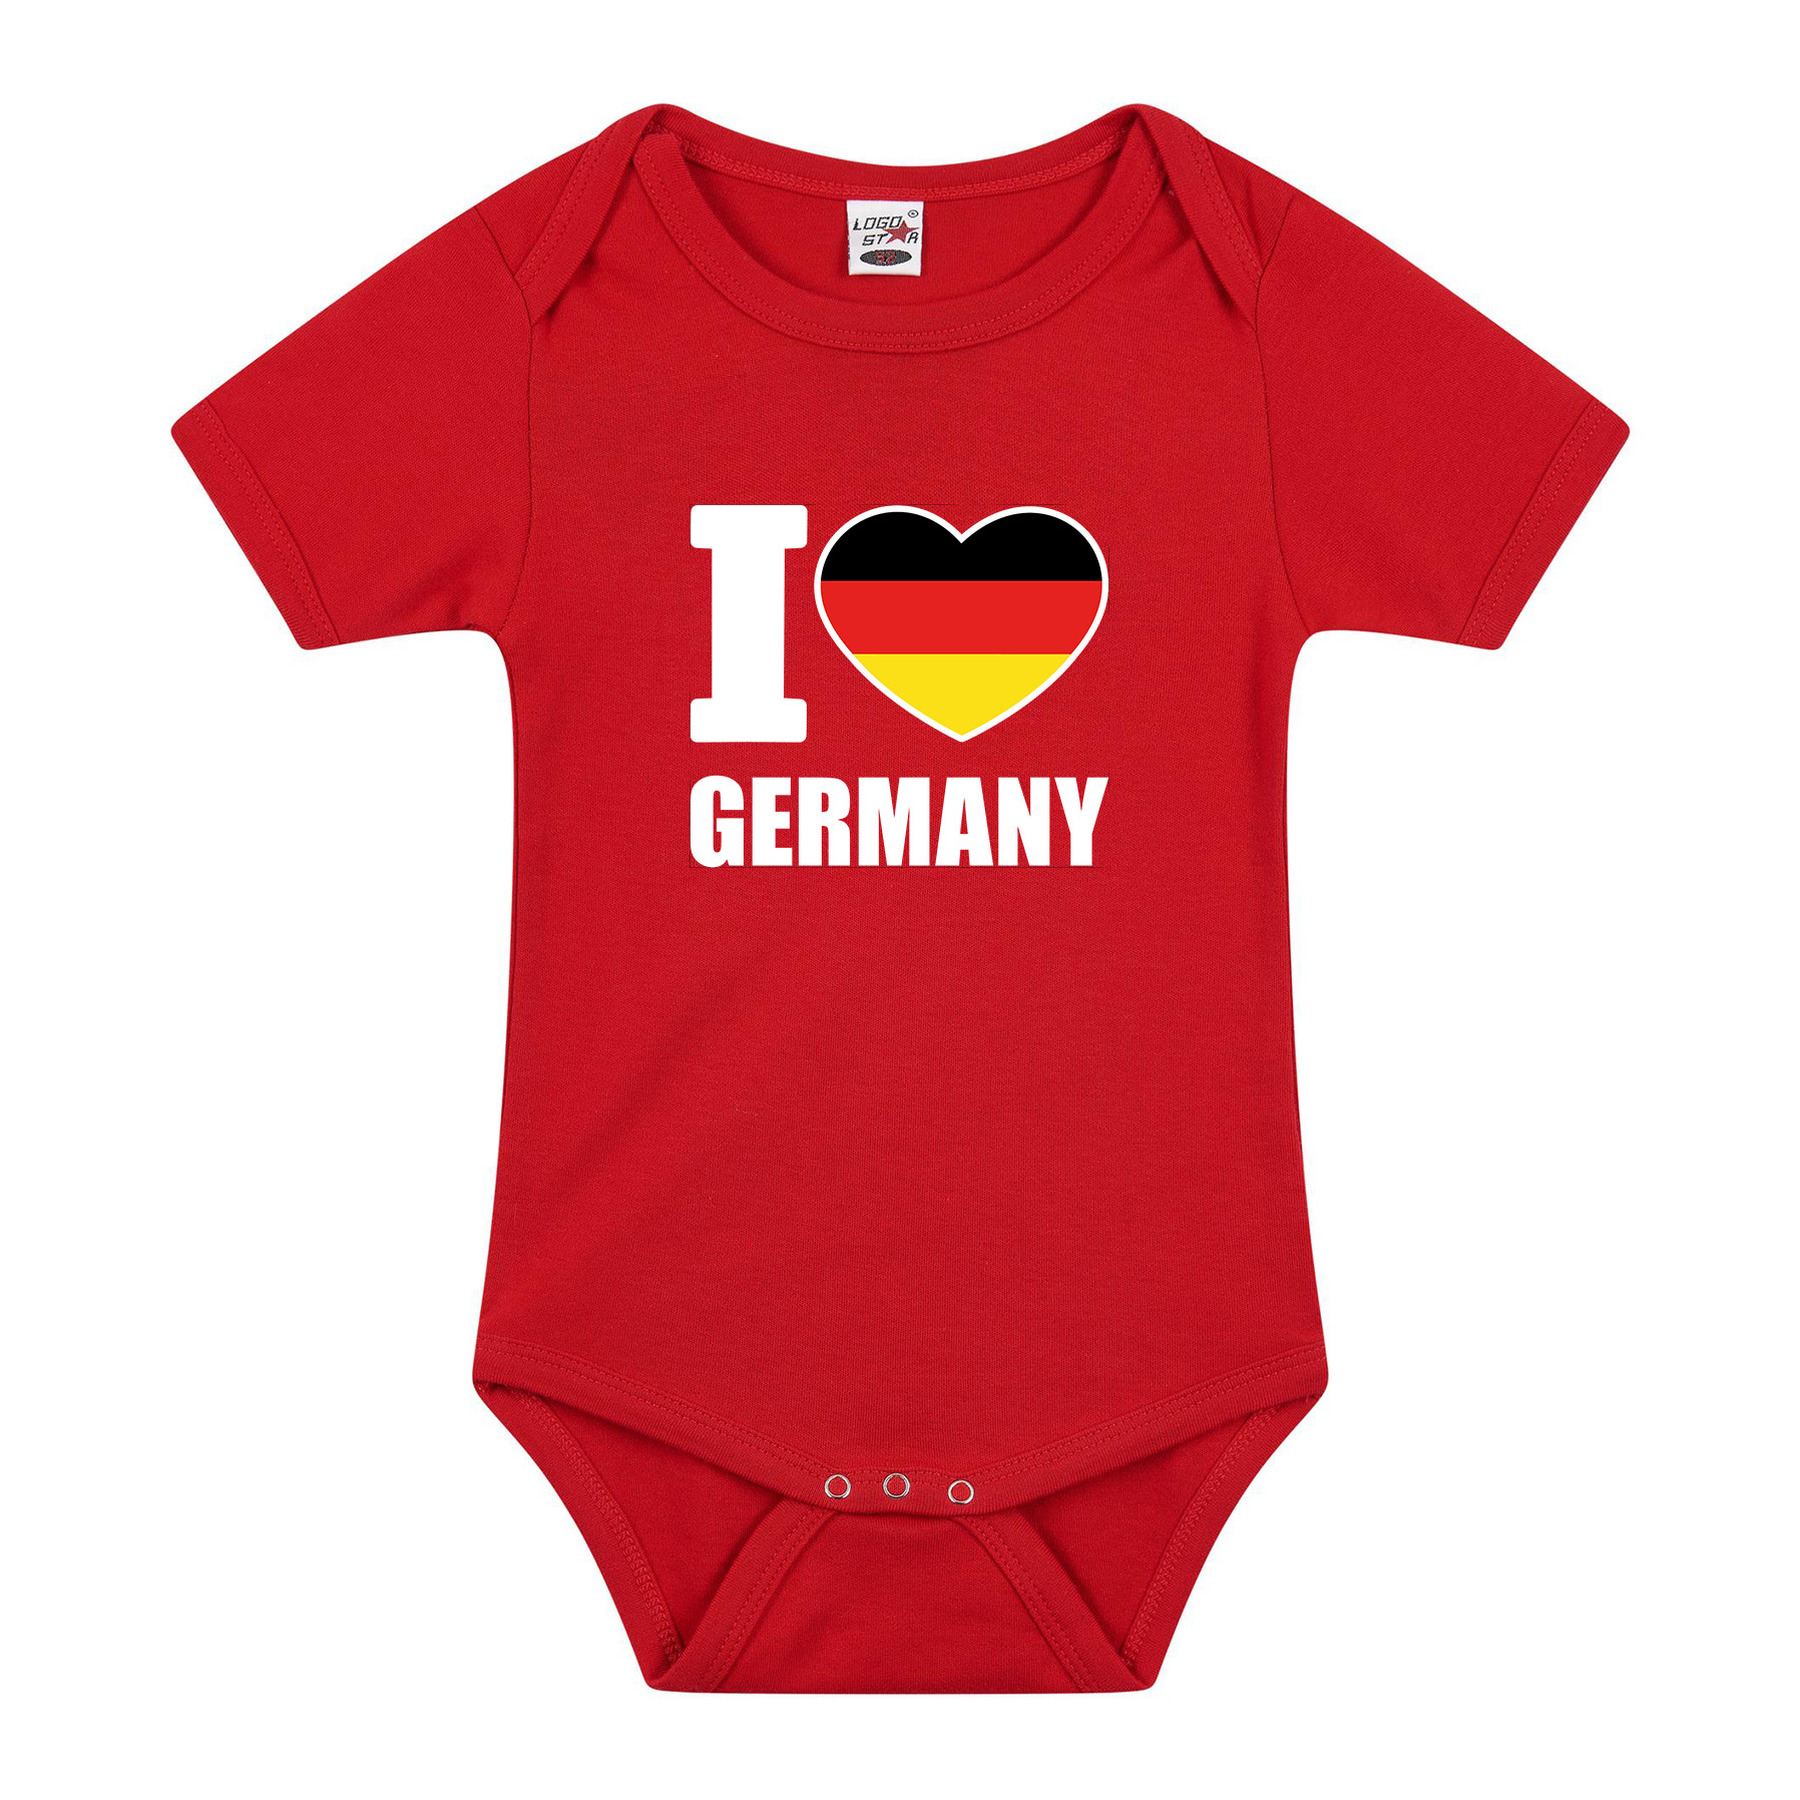 I love Germany baby rompertje rood Duitsland jongen-meisje